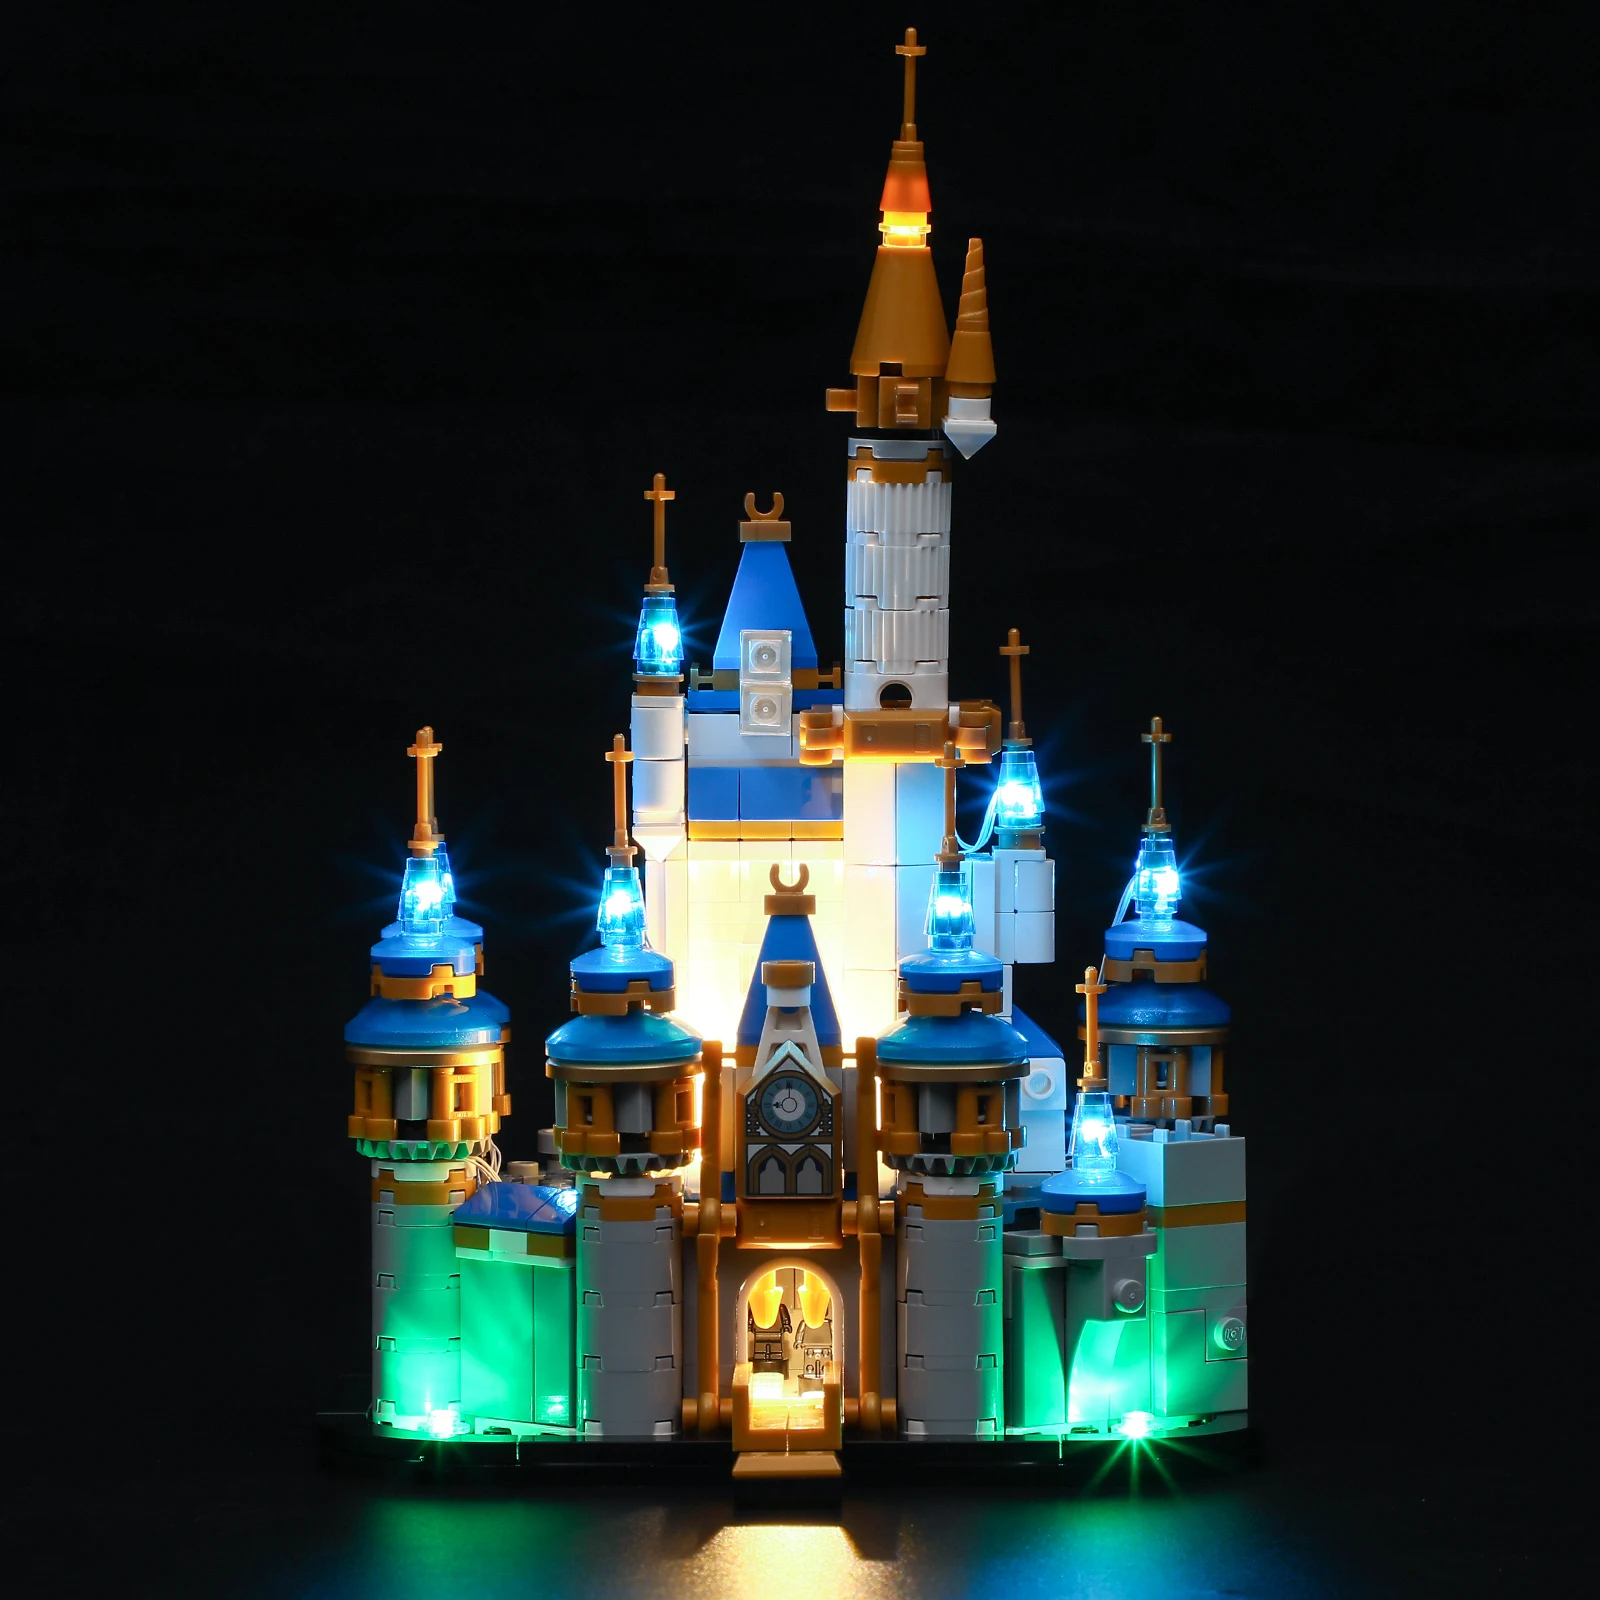 Комплект светодиодных ламп JOY MAGS для 40478, набор строительных блоков Mini Princess Castle (не включает модель), кирпичи, игрушки для детей